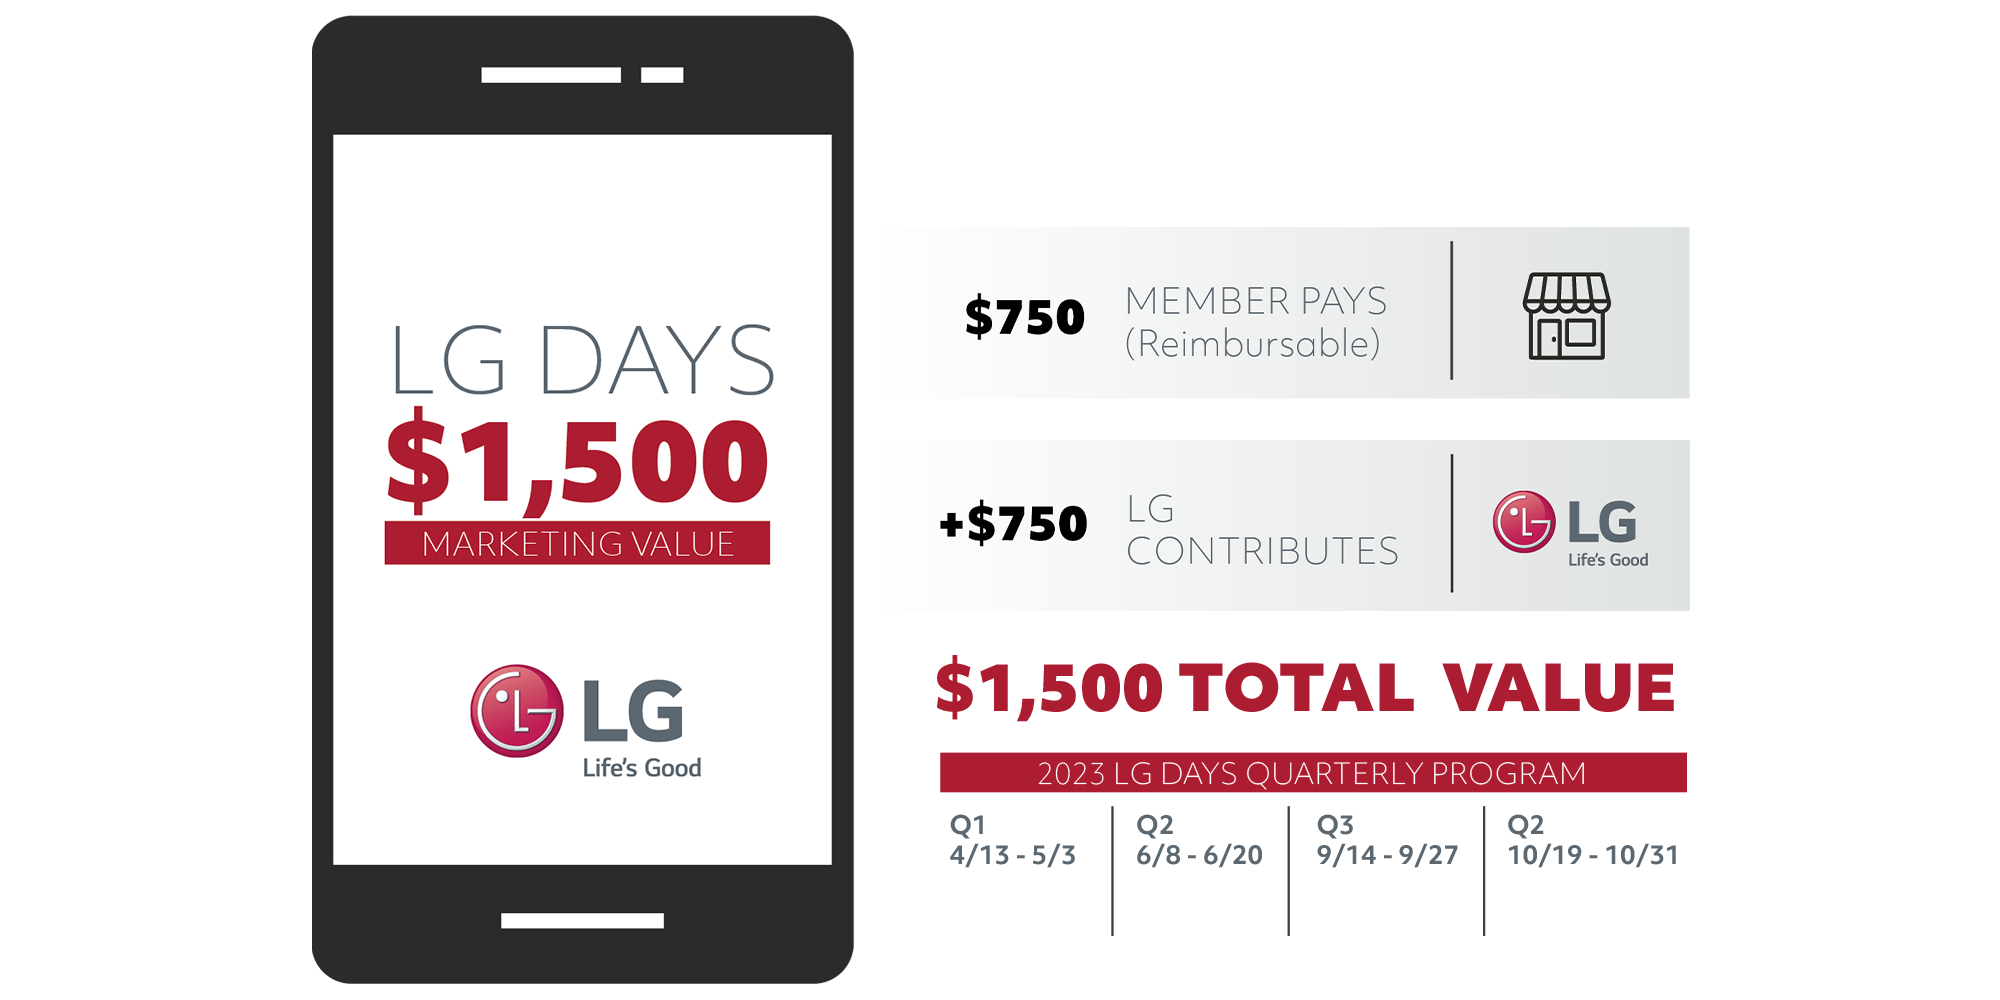 LG-Days-Marketing-Value_v3-lrg